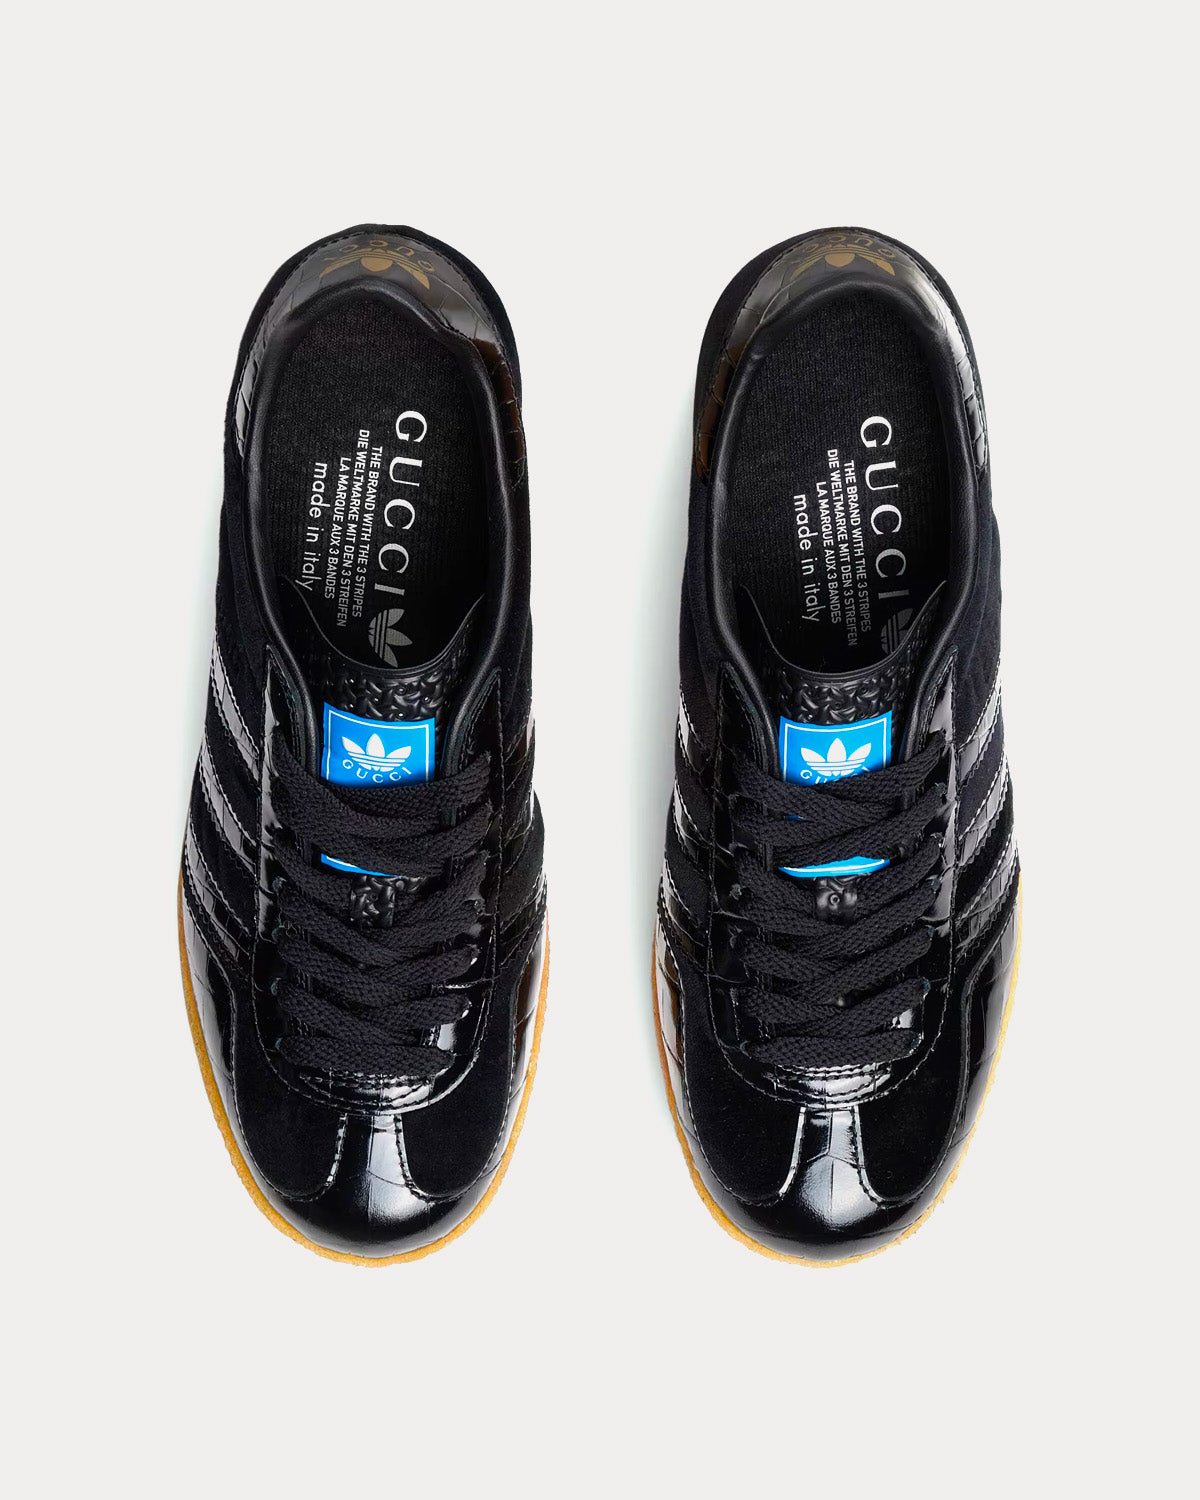 Adidas x Gucci Gazelle Wedge Black Velvet Low Top Sneakers - Sneak 